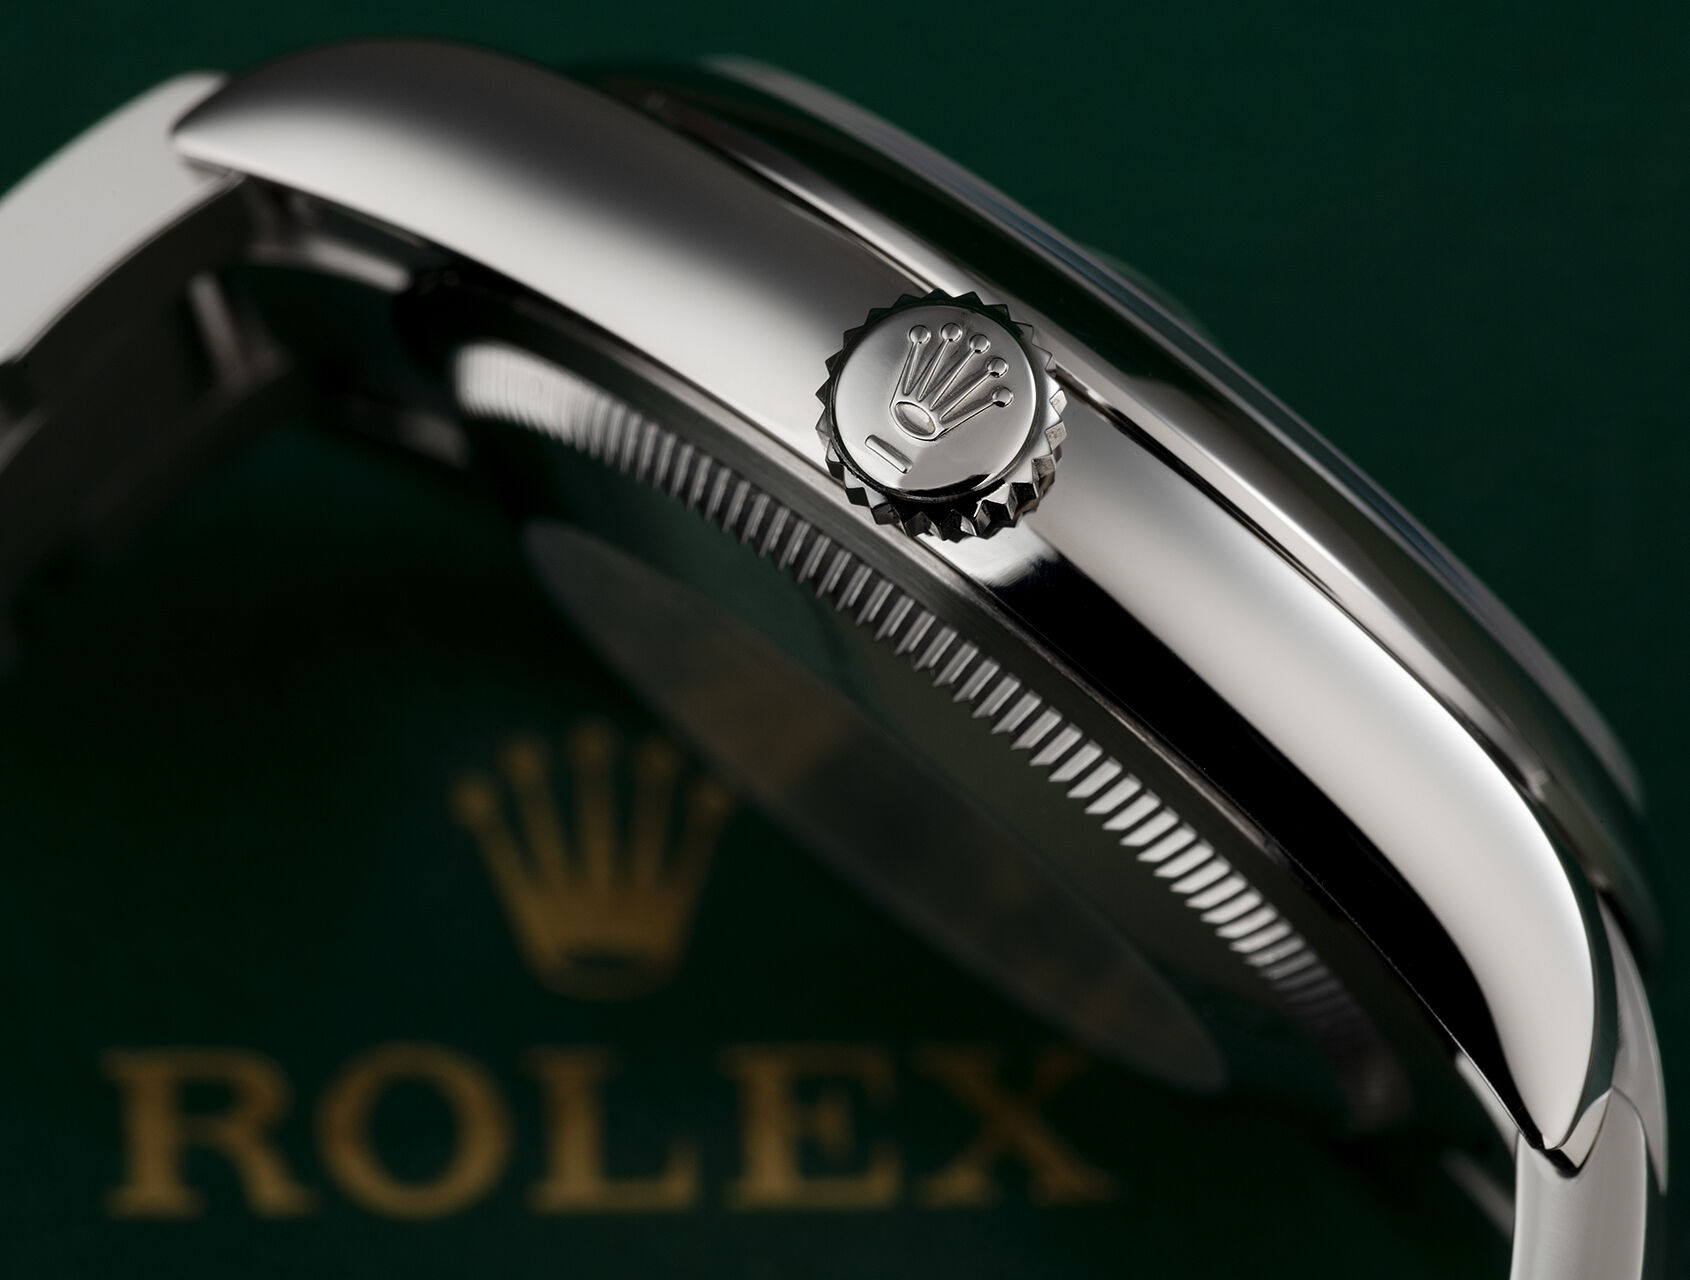 ref 126200 | 126200 - Rolex Warranty to 2025 | Rolex Datejust